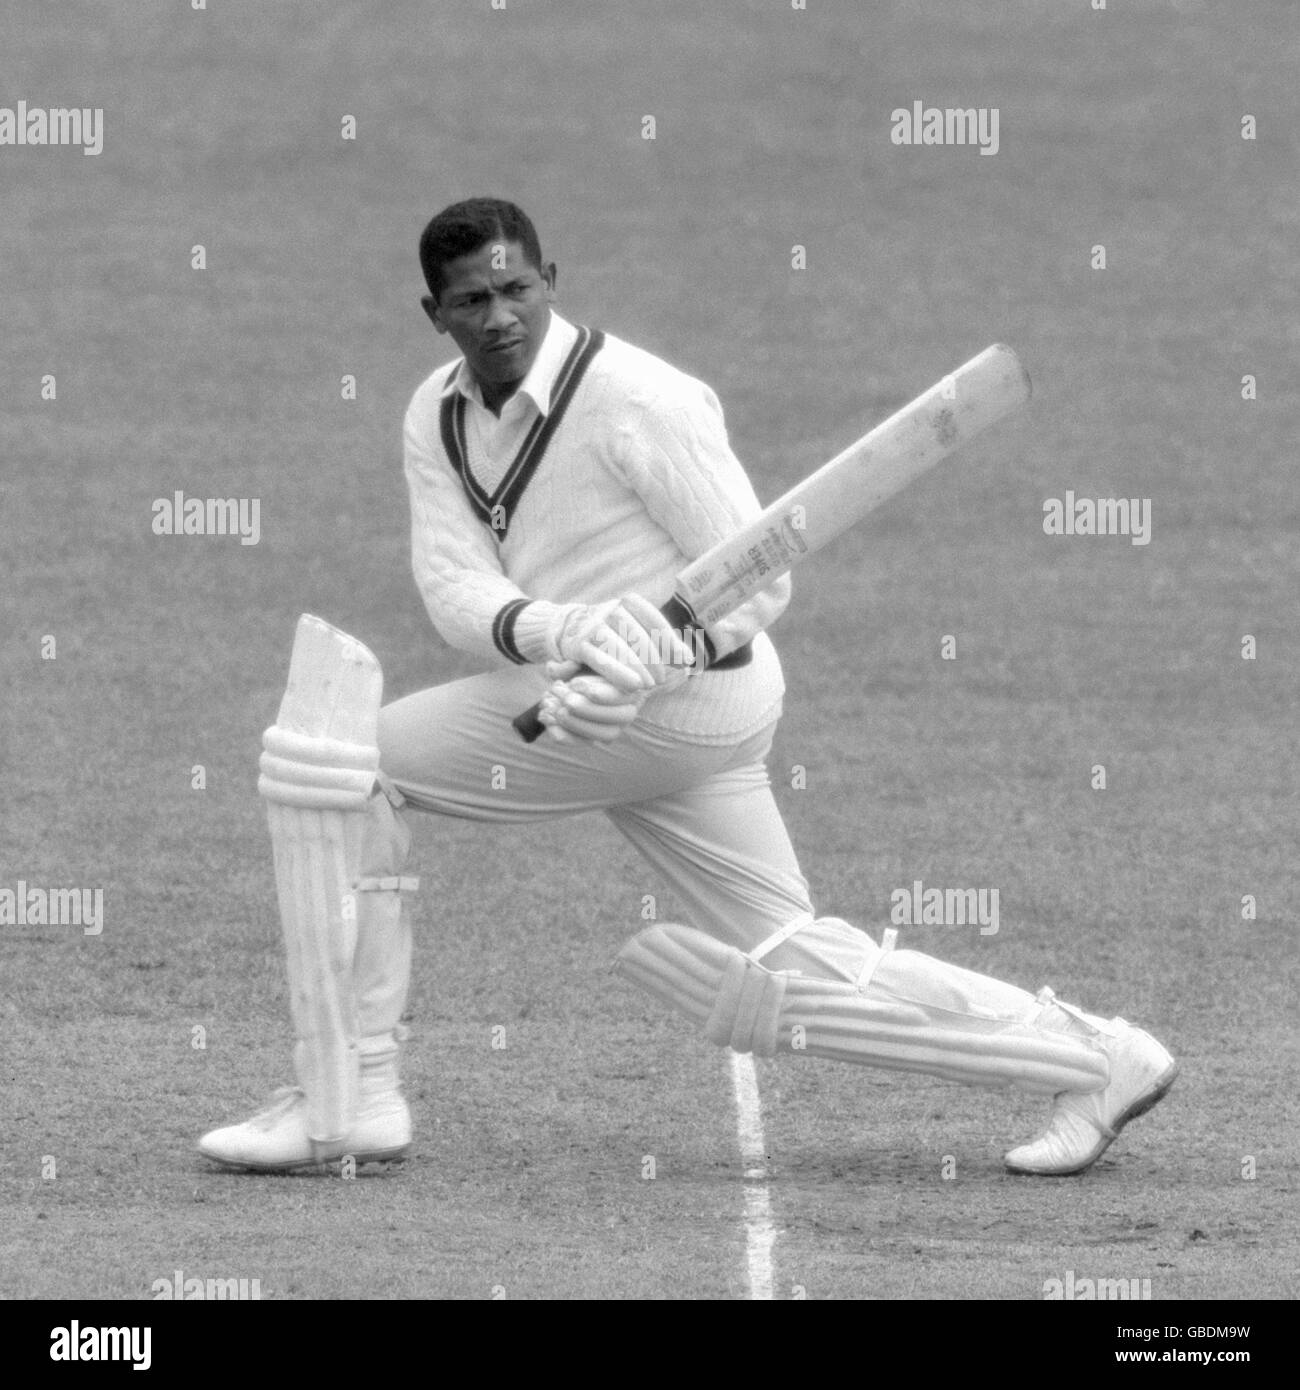 Archive-PA104232-1crop vu batting ici est Basil Butcher (British Guyane), un batteur de droite de 28 ans et un lanceur de spin avec l'équipe de cricket des Indes occidentales. Banque D'Images